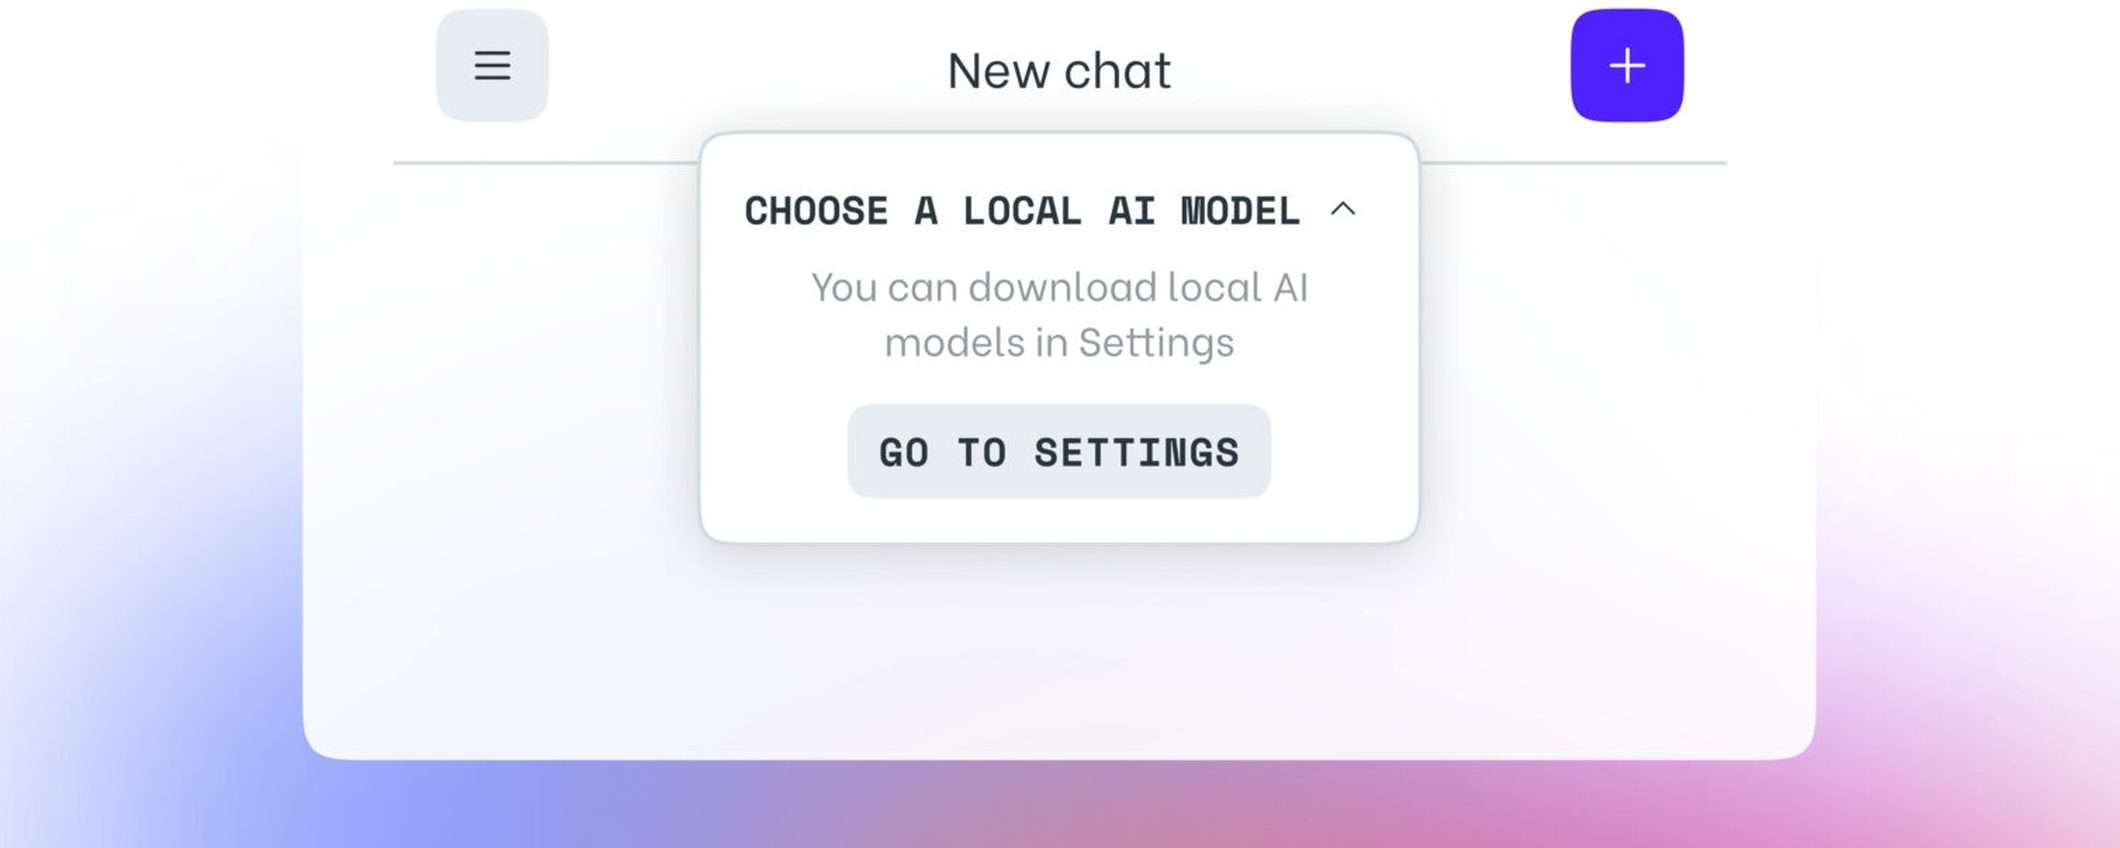 Opera One può usare localmente oltre 150 modelli IA